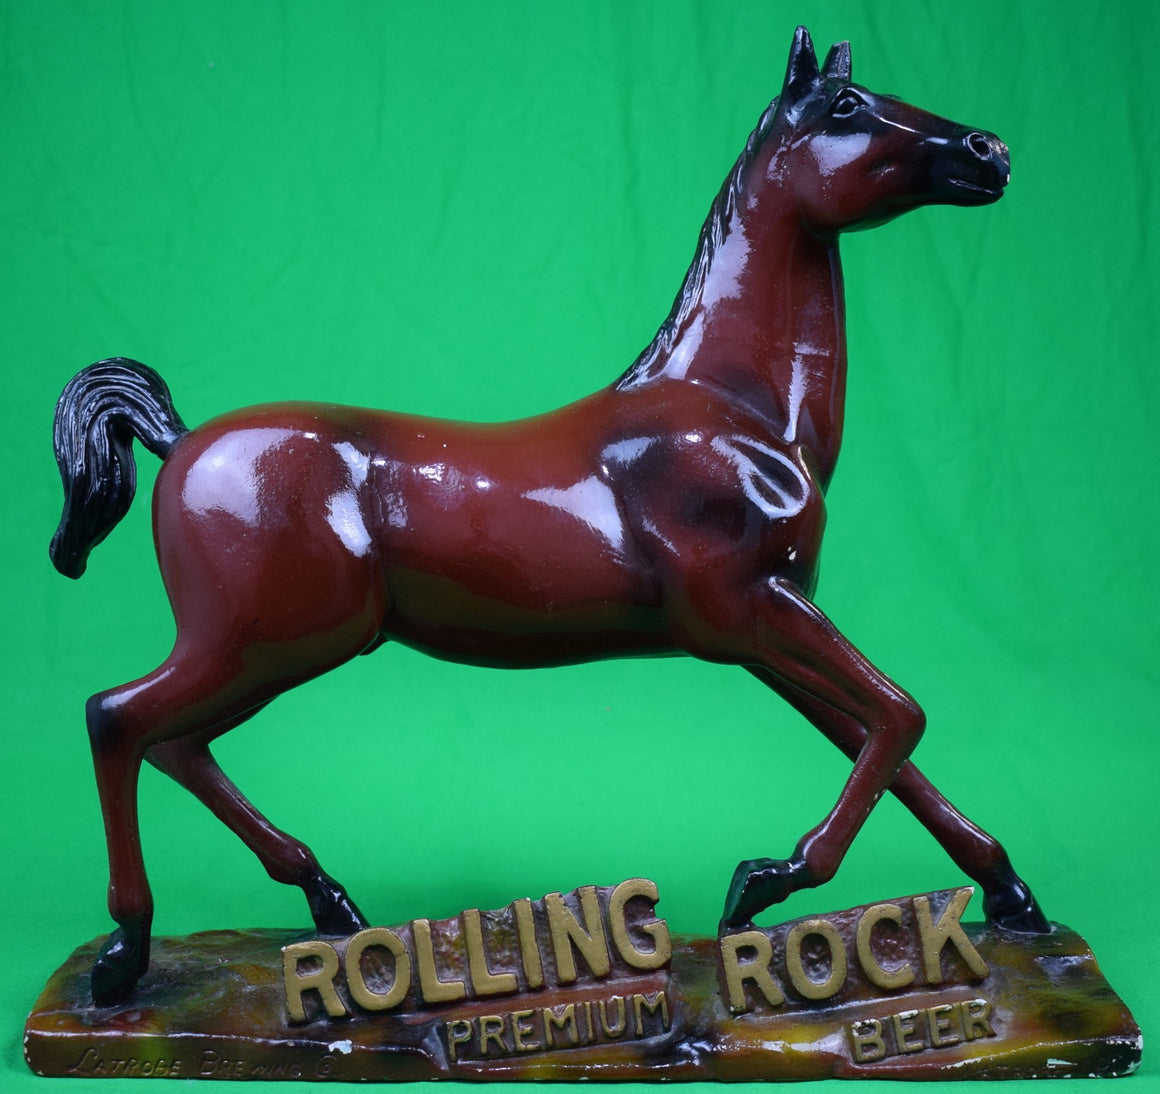 "Rolling Rock Premium Beer Chalkware Horse Advert Display" (SOLD)